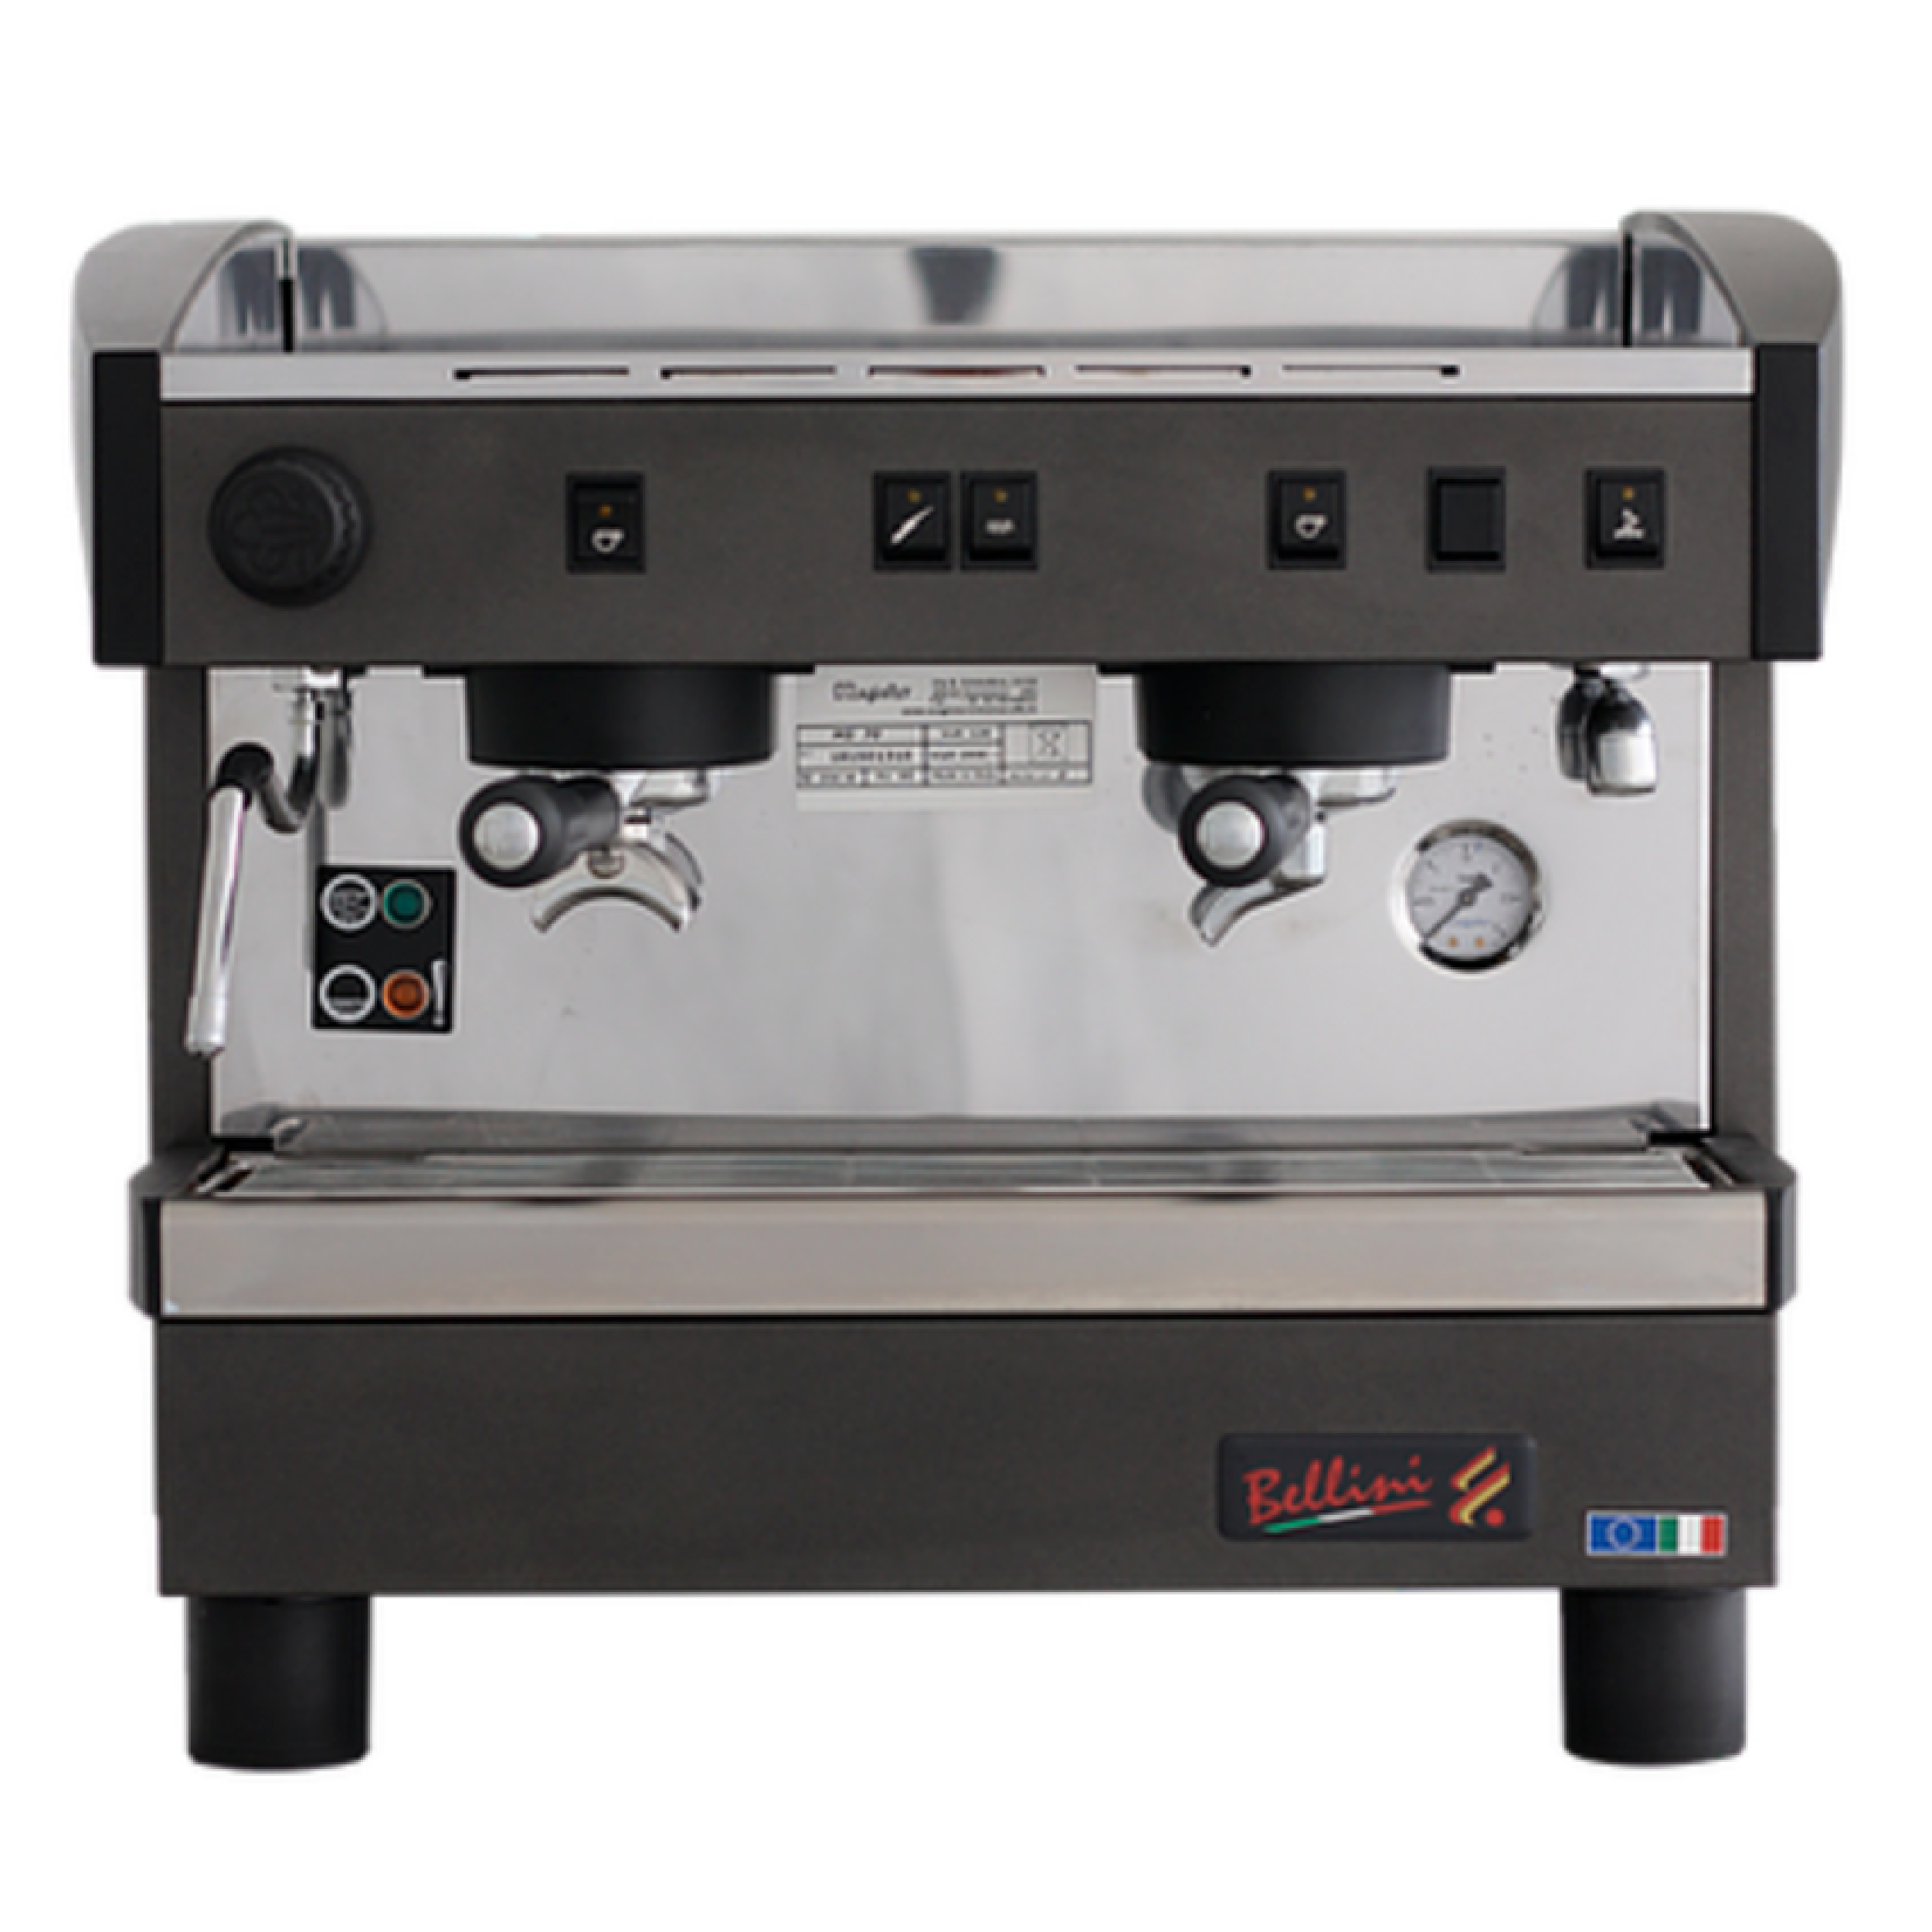 Eficiencia y Calidad: AC 70 Máquina de Café